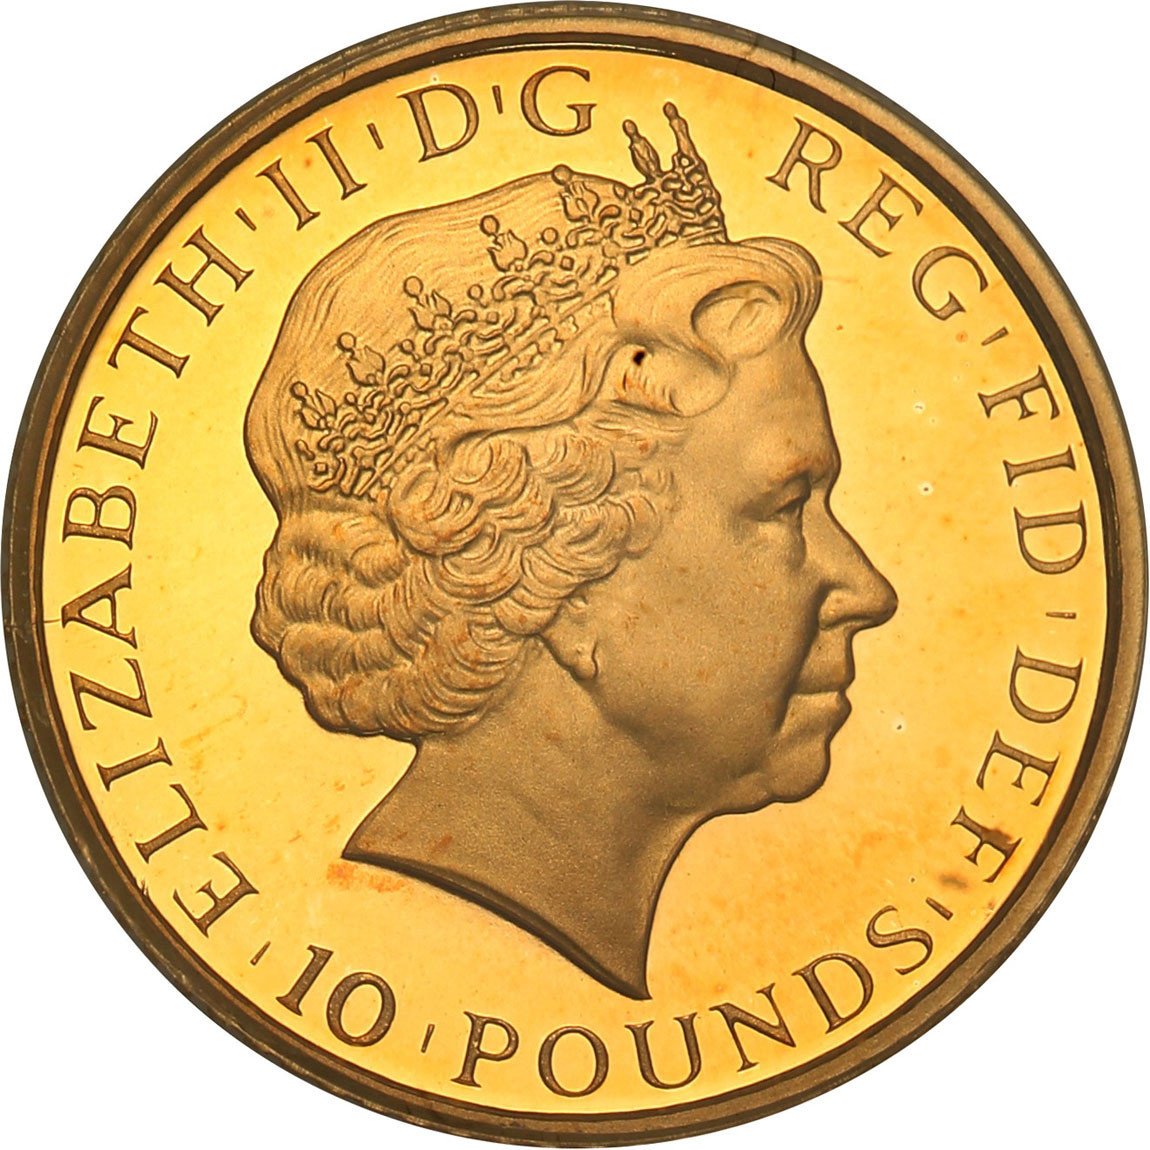 W. Brytania. Elżbieta II. 10 funtów 2011 PCGS PR70 DCAM (MAX) 1/10 uncji złota